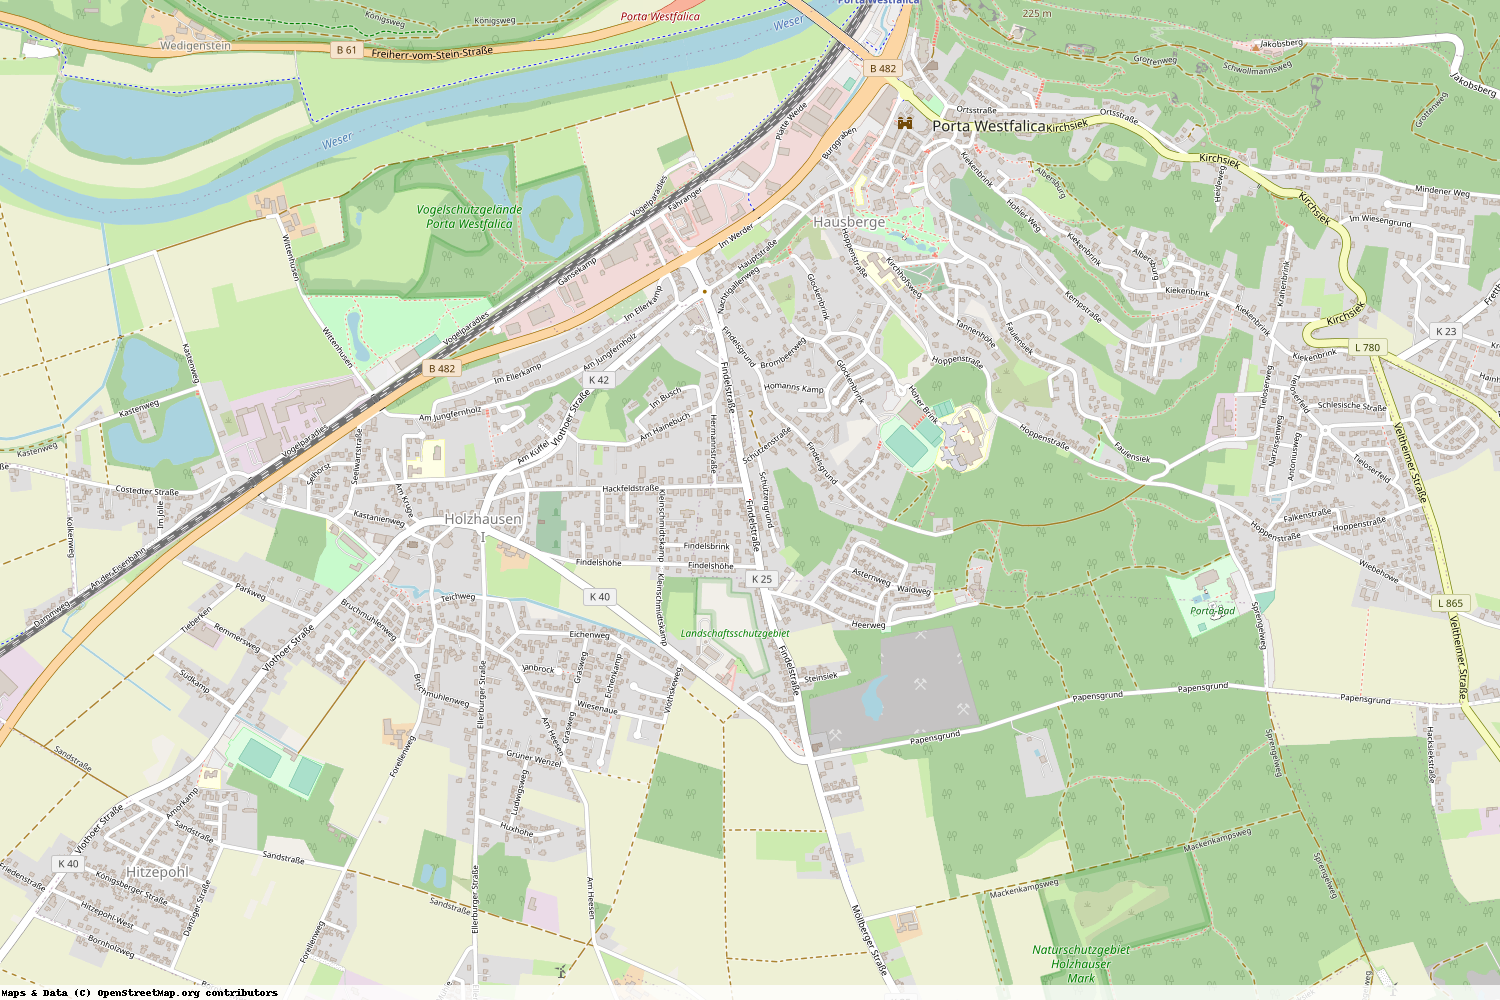 Ist gerade Stromausfall in Nordrhein-Westfalen - Minden-Lübbecke - Porta Westfalica?